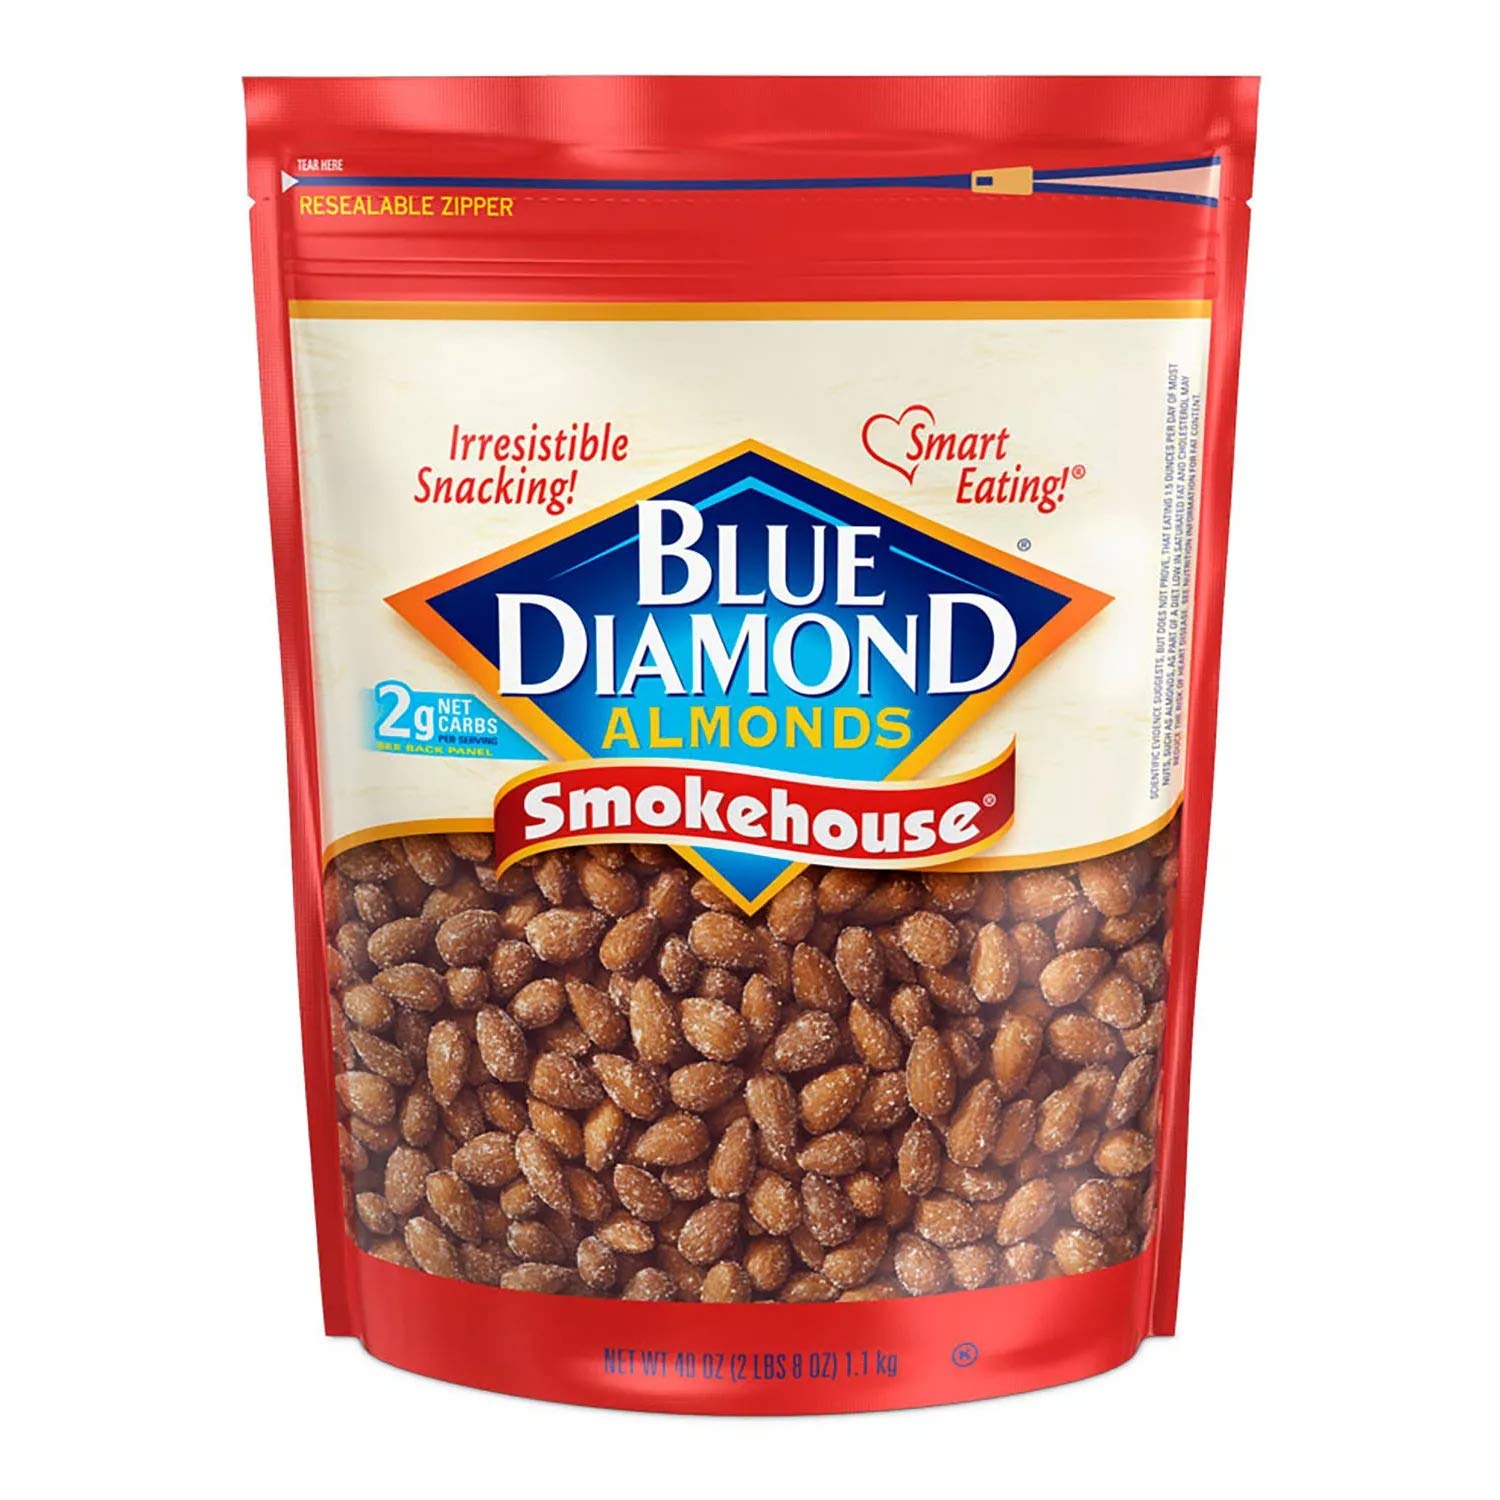 40-Oz Blue Diamond Almonds (Smokehouse) $9.10 w/ S&S + Free Shipping w/ Prime or on $25+